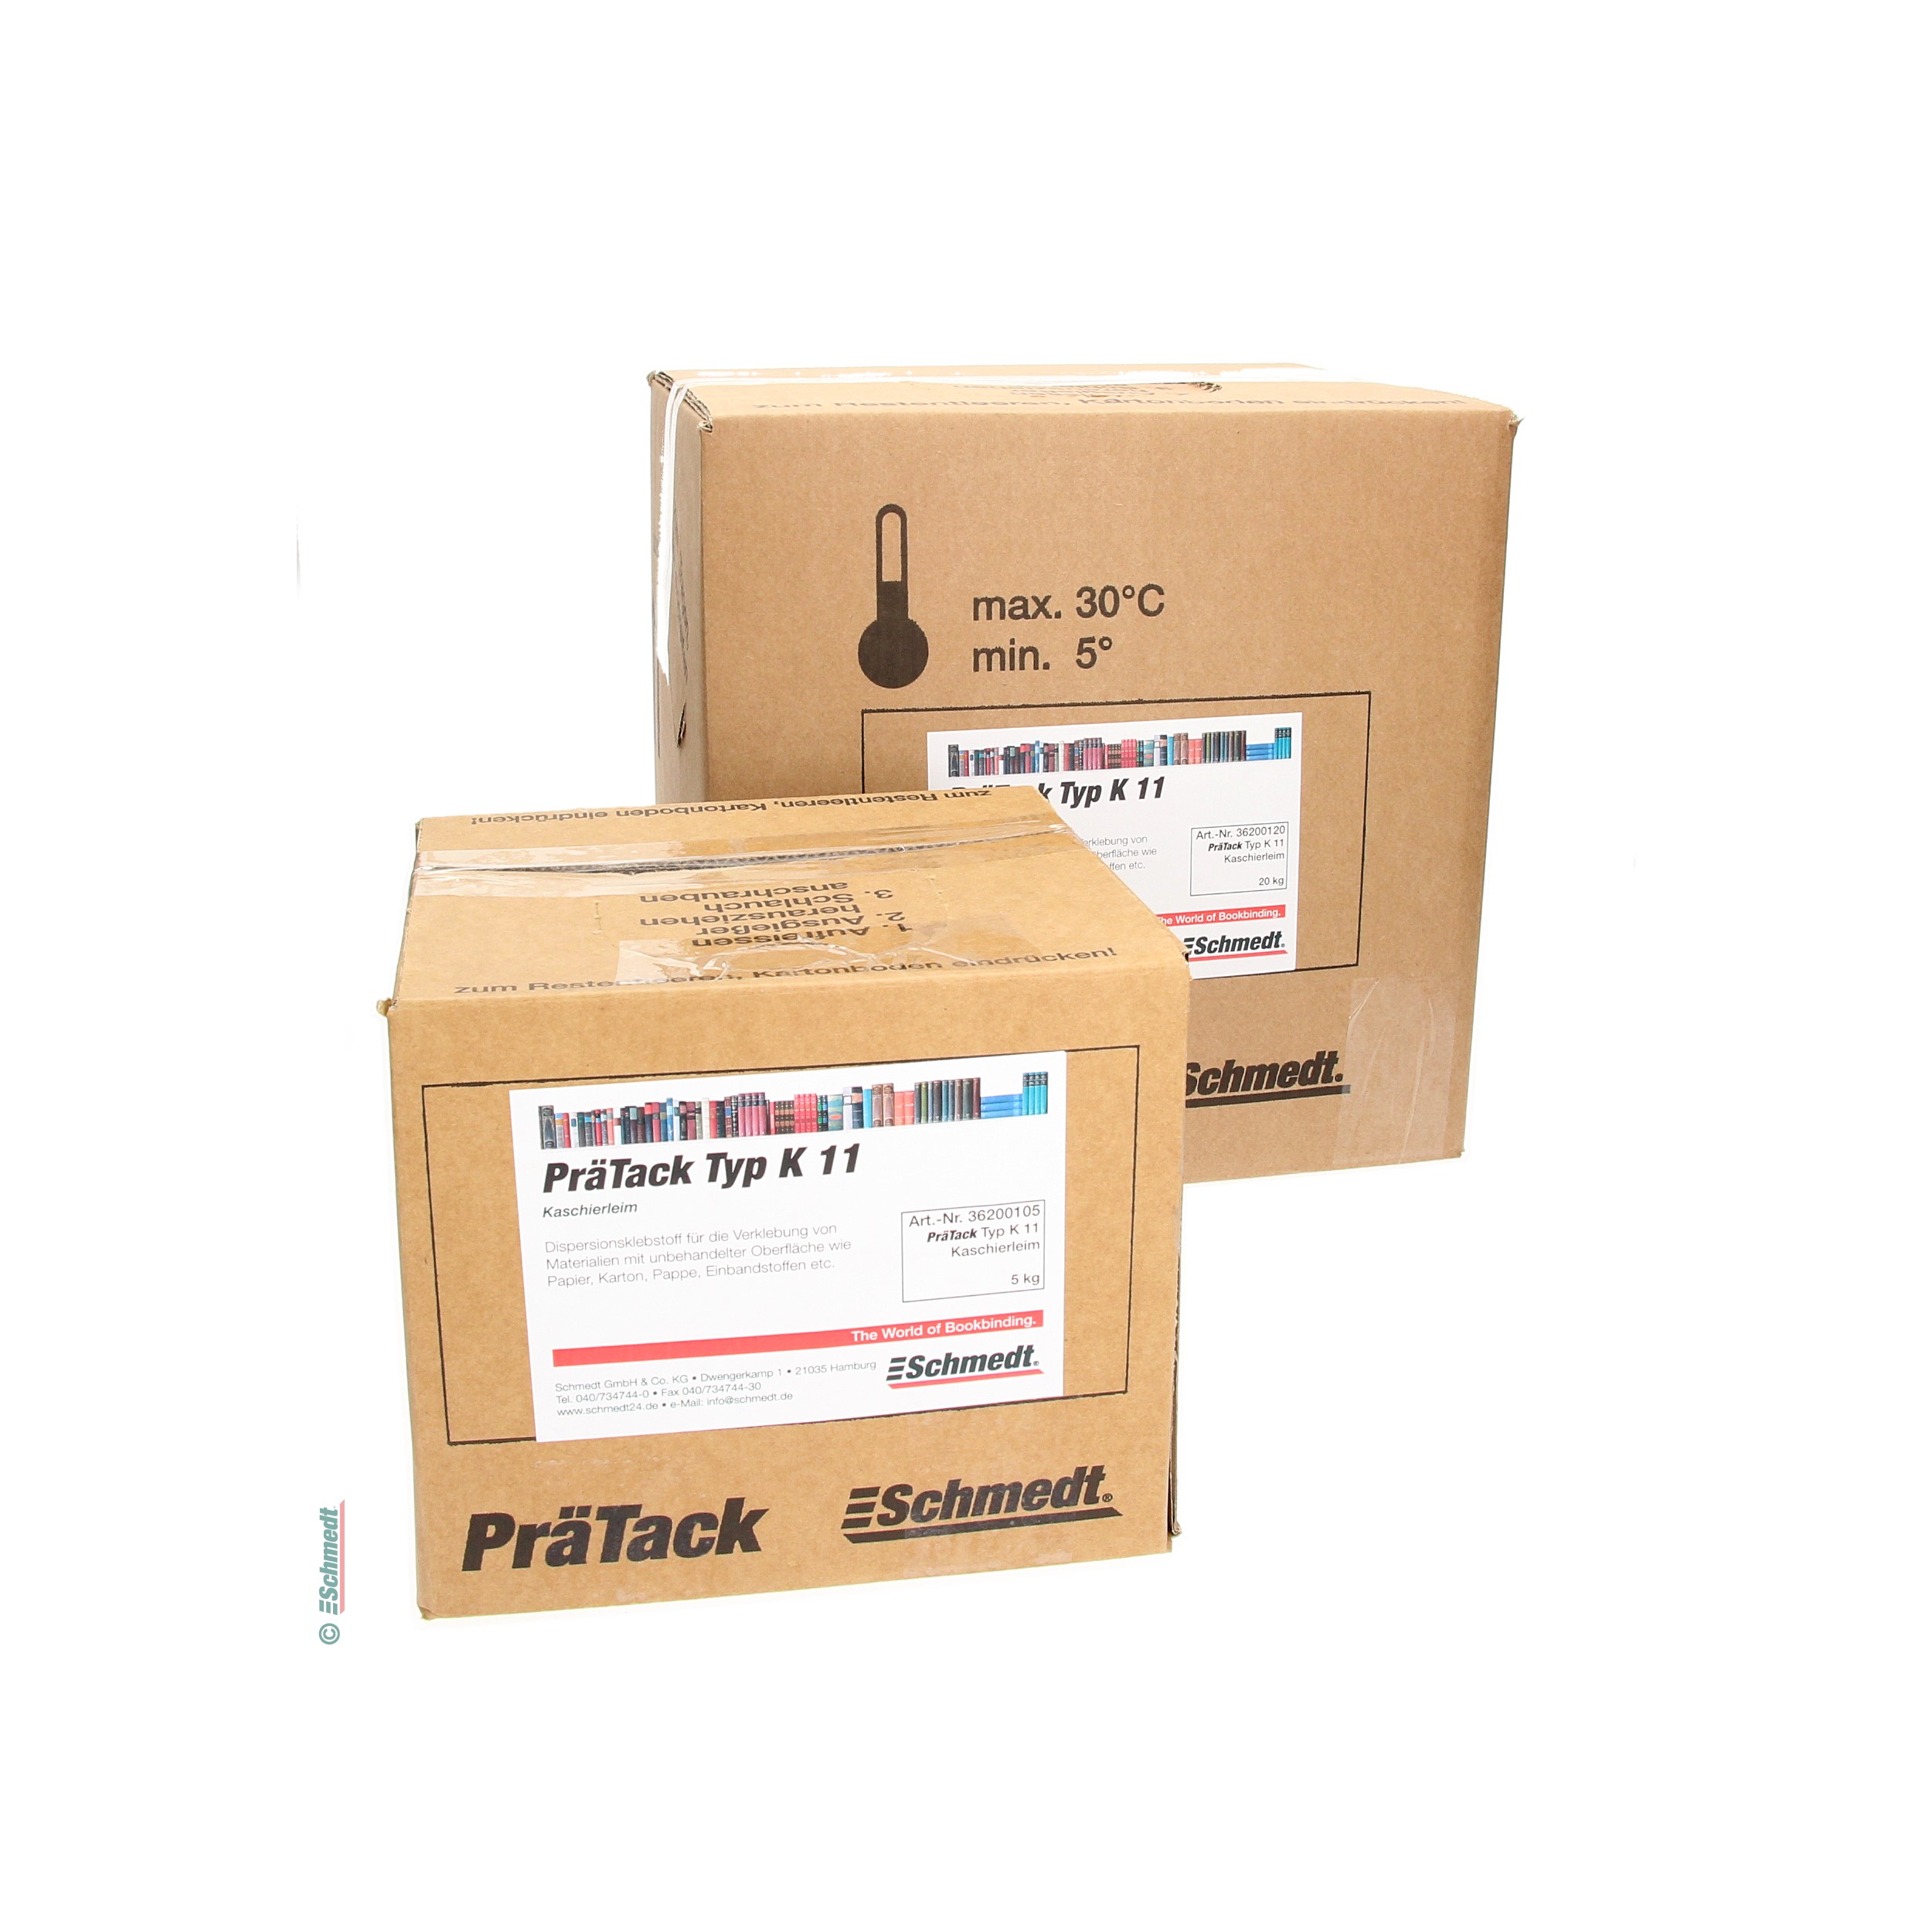 PräTack K11 - Contenido Bag-in-Box / 5 kg - para el contracolado de materiales con superficies sin tratar como papel, cartón, cartulina, tel...